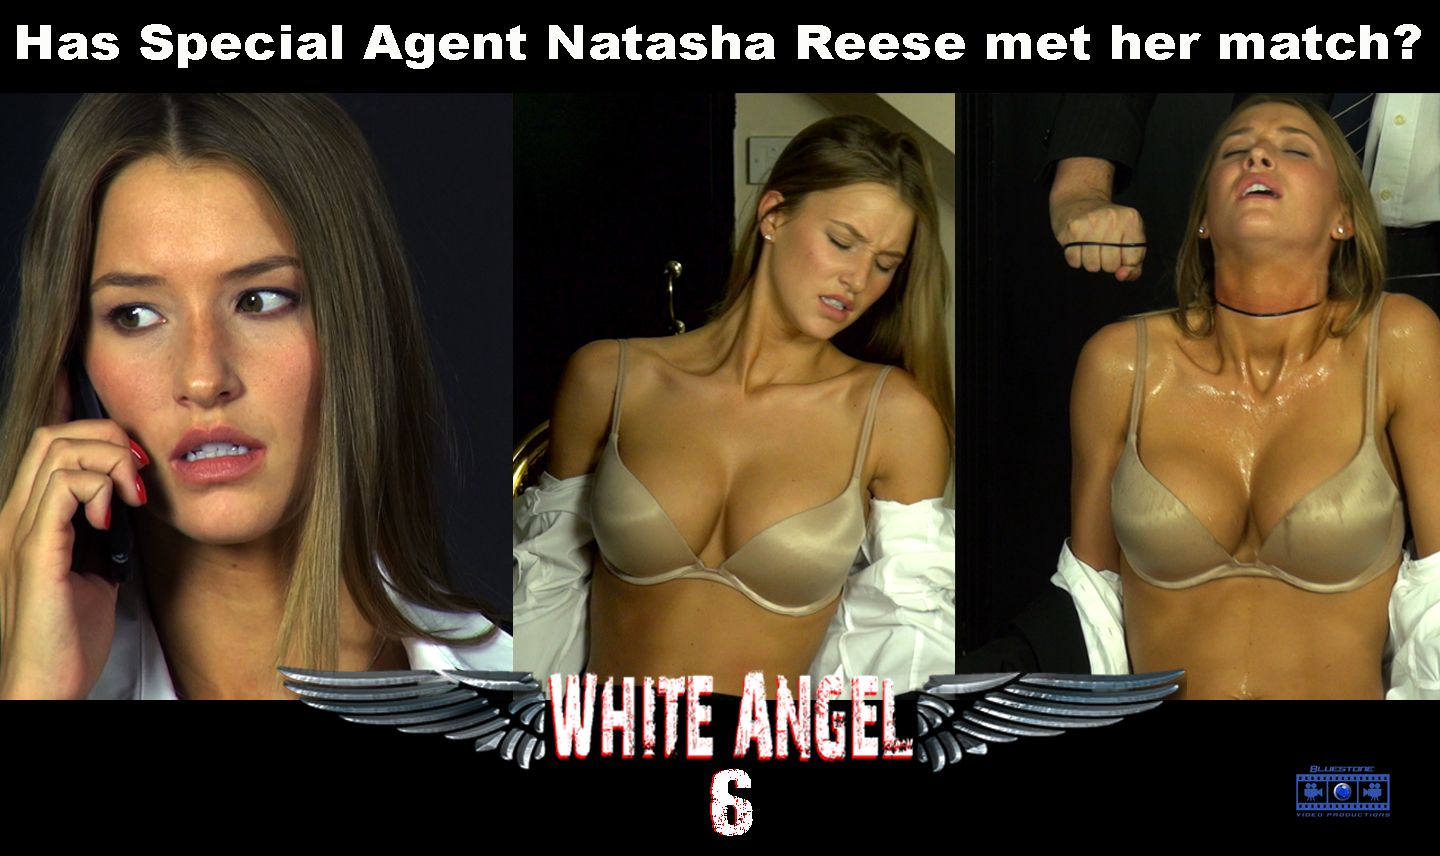 White Angel 6 poster.jpg